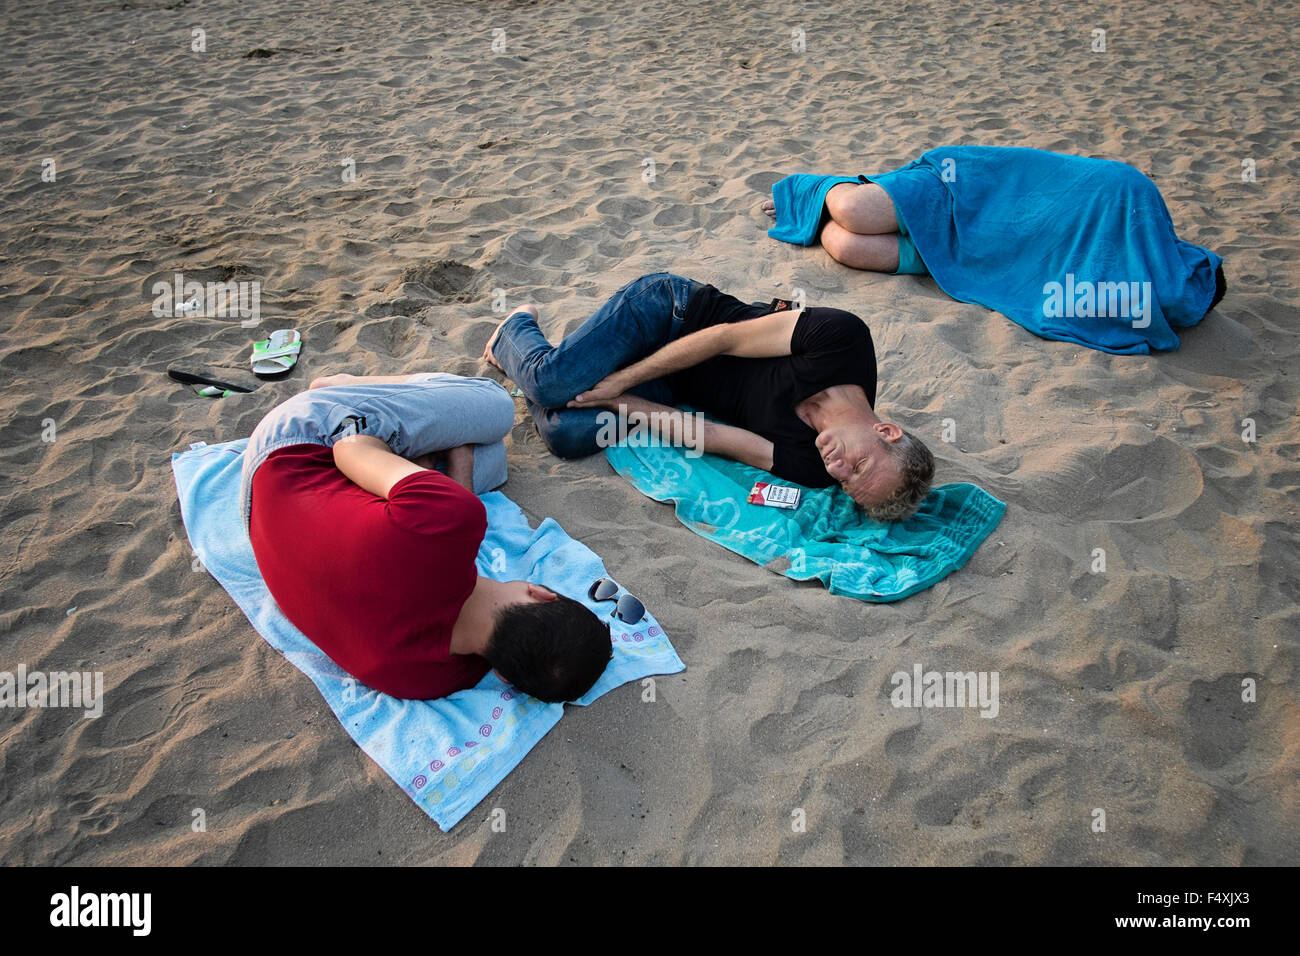 Junge Männer schlafen am Strand Urlaub Stadt von Amasra in der Provinz Bartin, Türkei Stockfoto